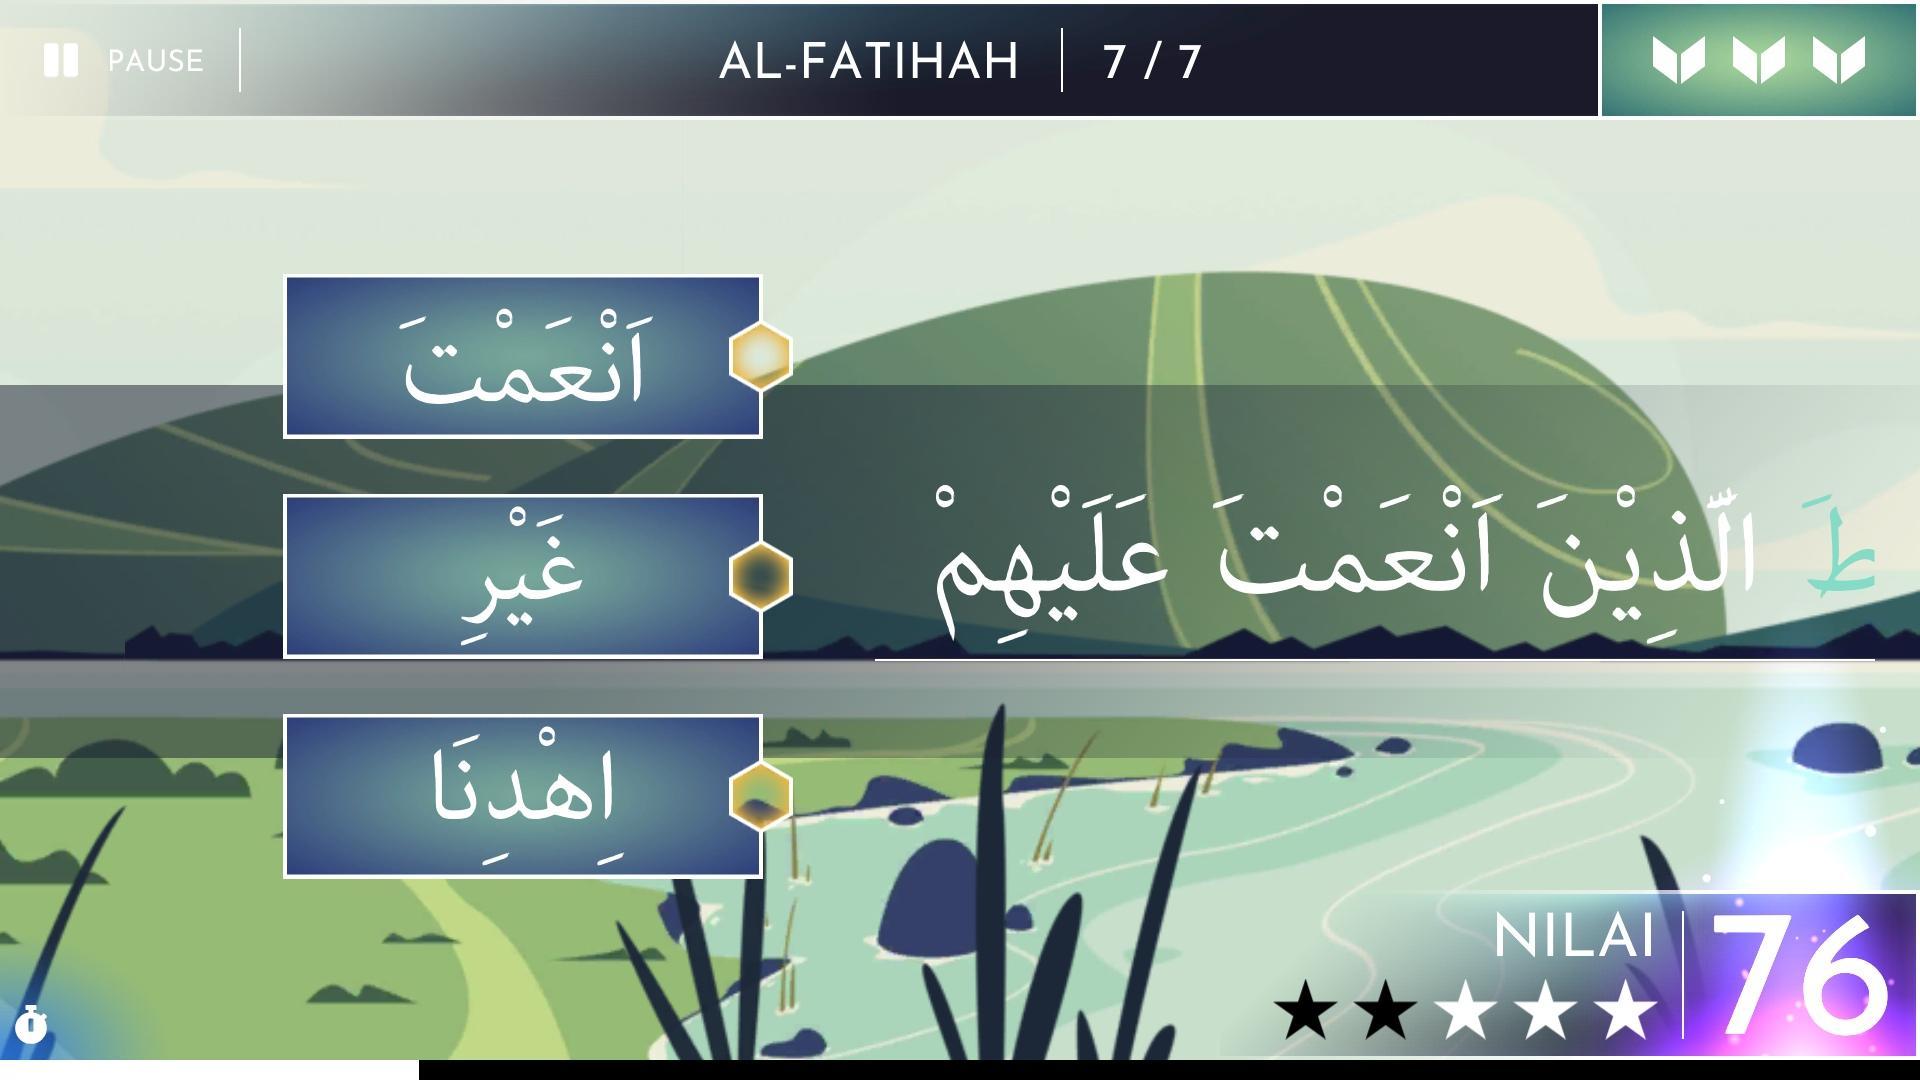 Hafalan Quran遊戲截圖